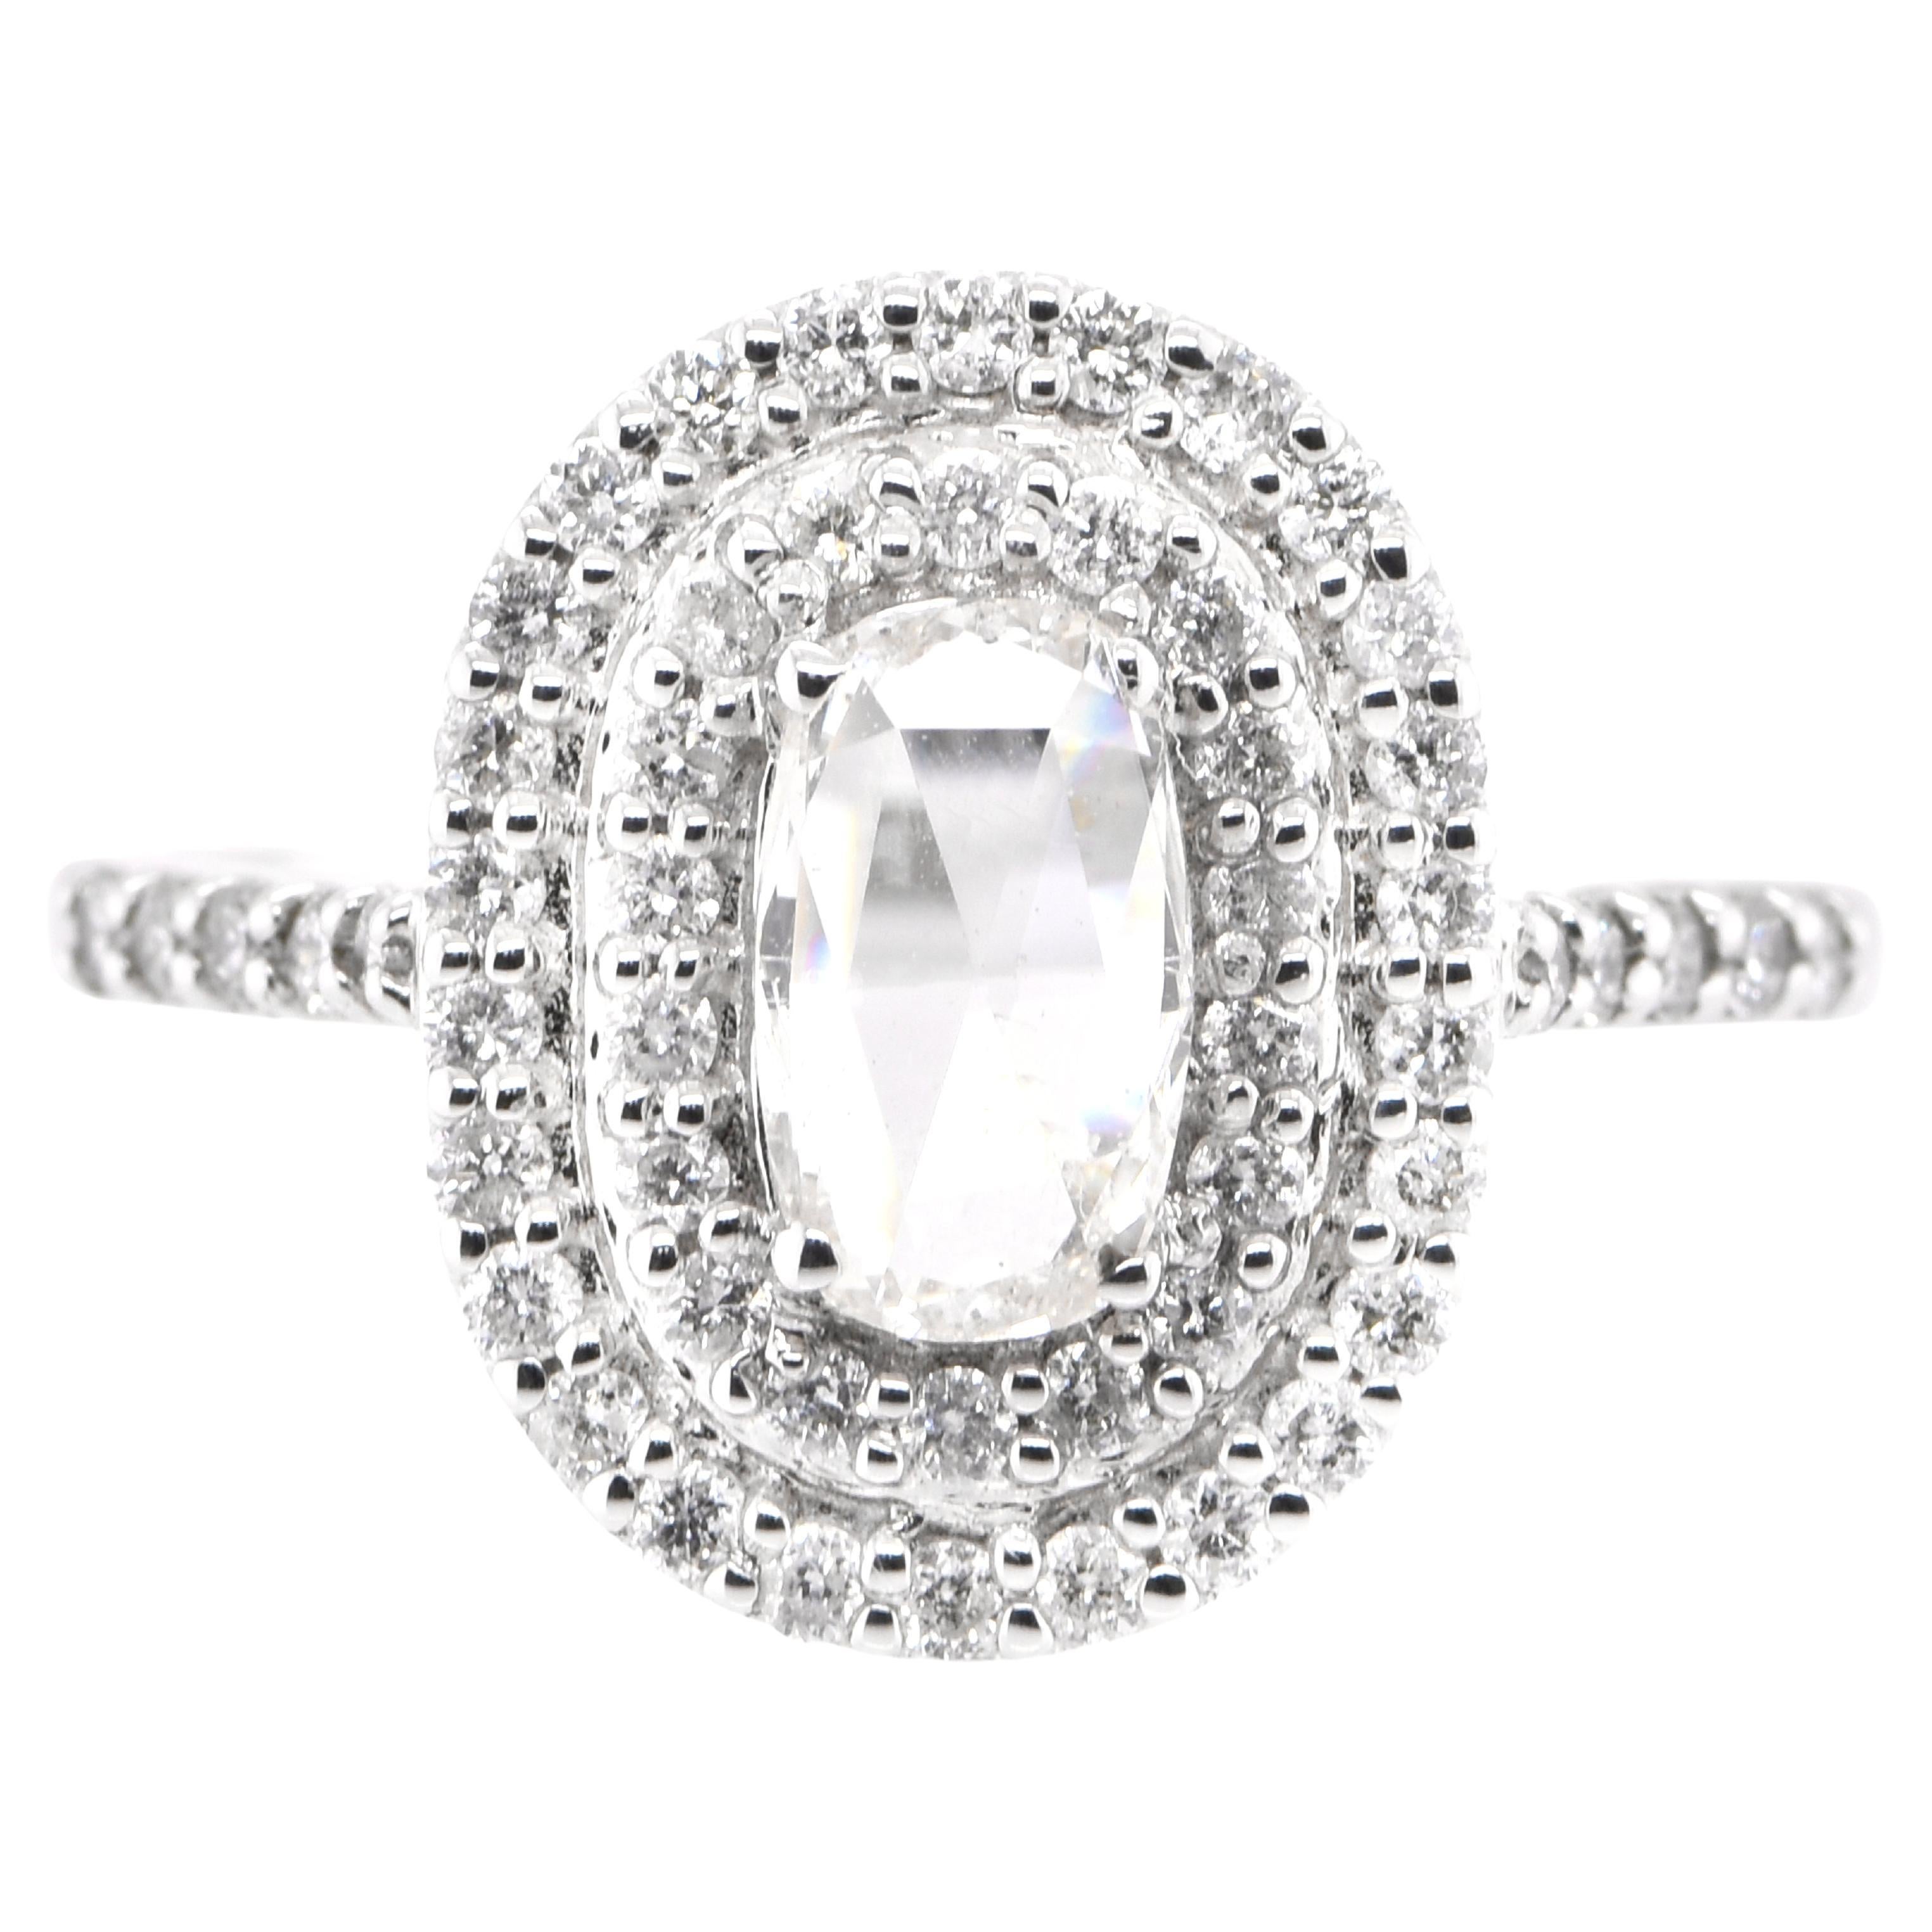 0.50 Carat Natural Rose Cut Diamond Double Halo Ring Set in 18 Karat White Gold